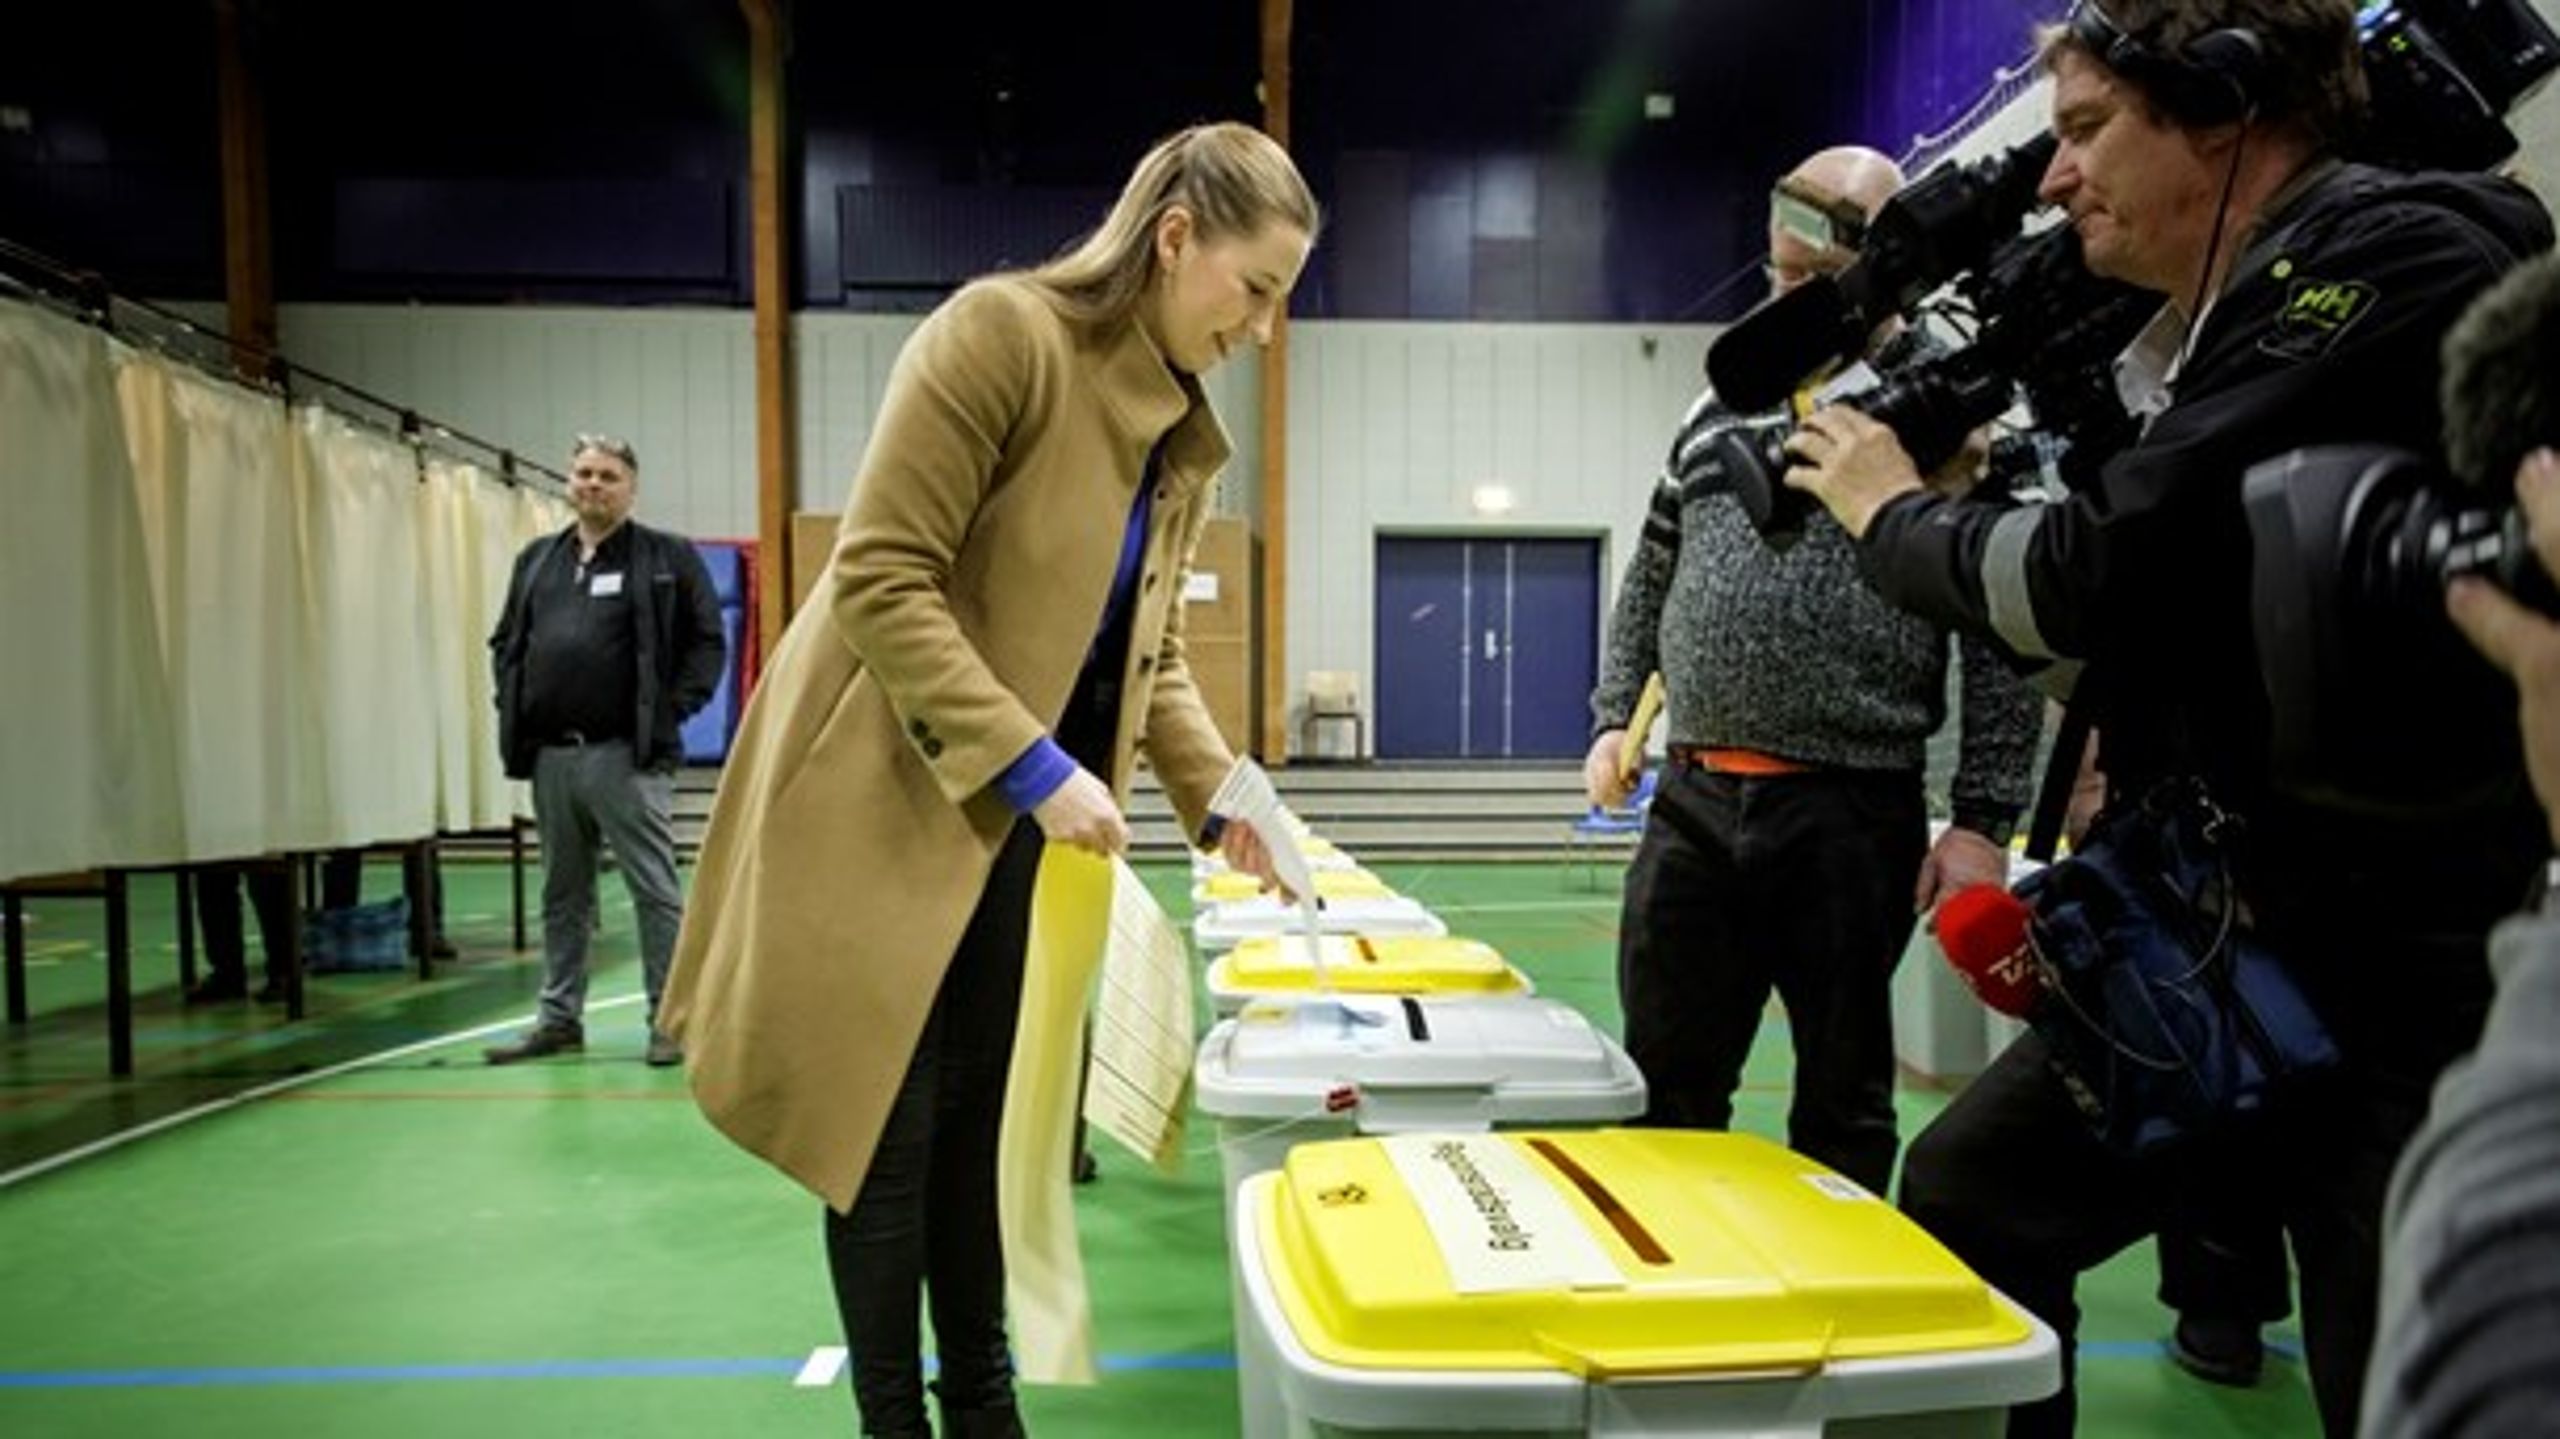 Socialdemokratiets formand, Mette Frederiksen, stemte tirsdag til kommunal- og regionsvalget i Egebjerghallen, Ballerup. Hendes parti blev kommunalvalgets største vinder.